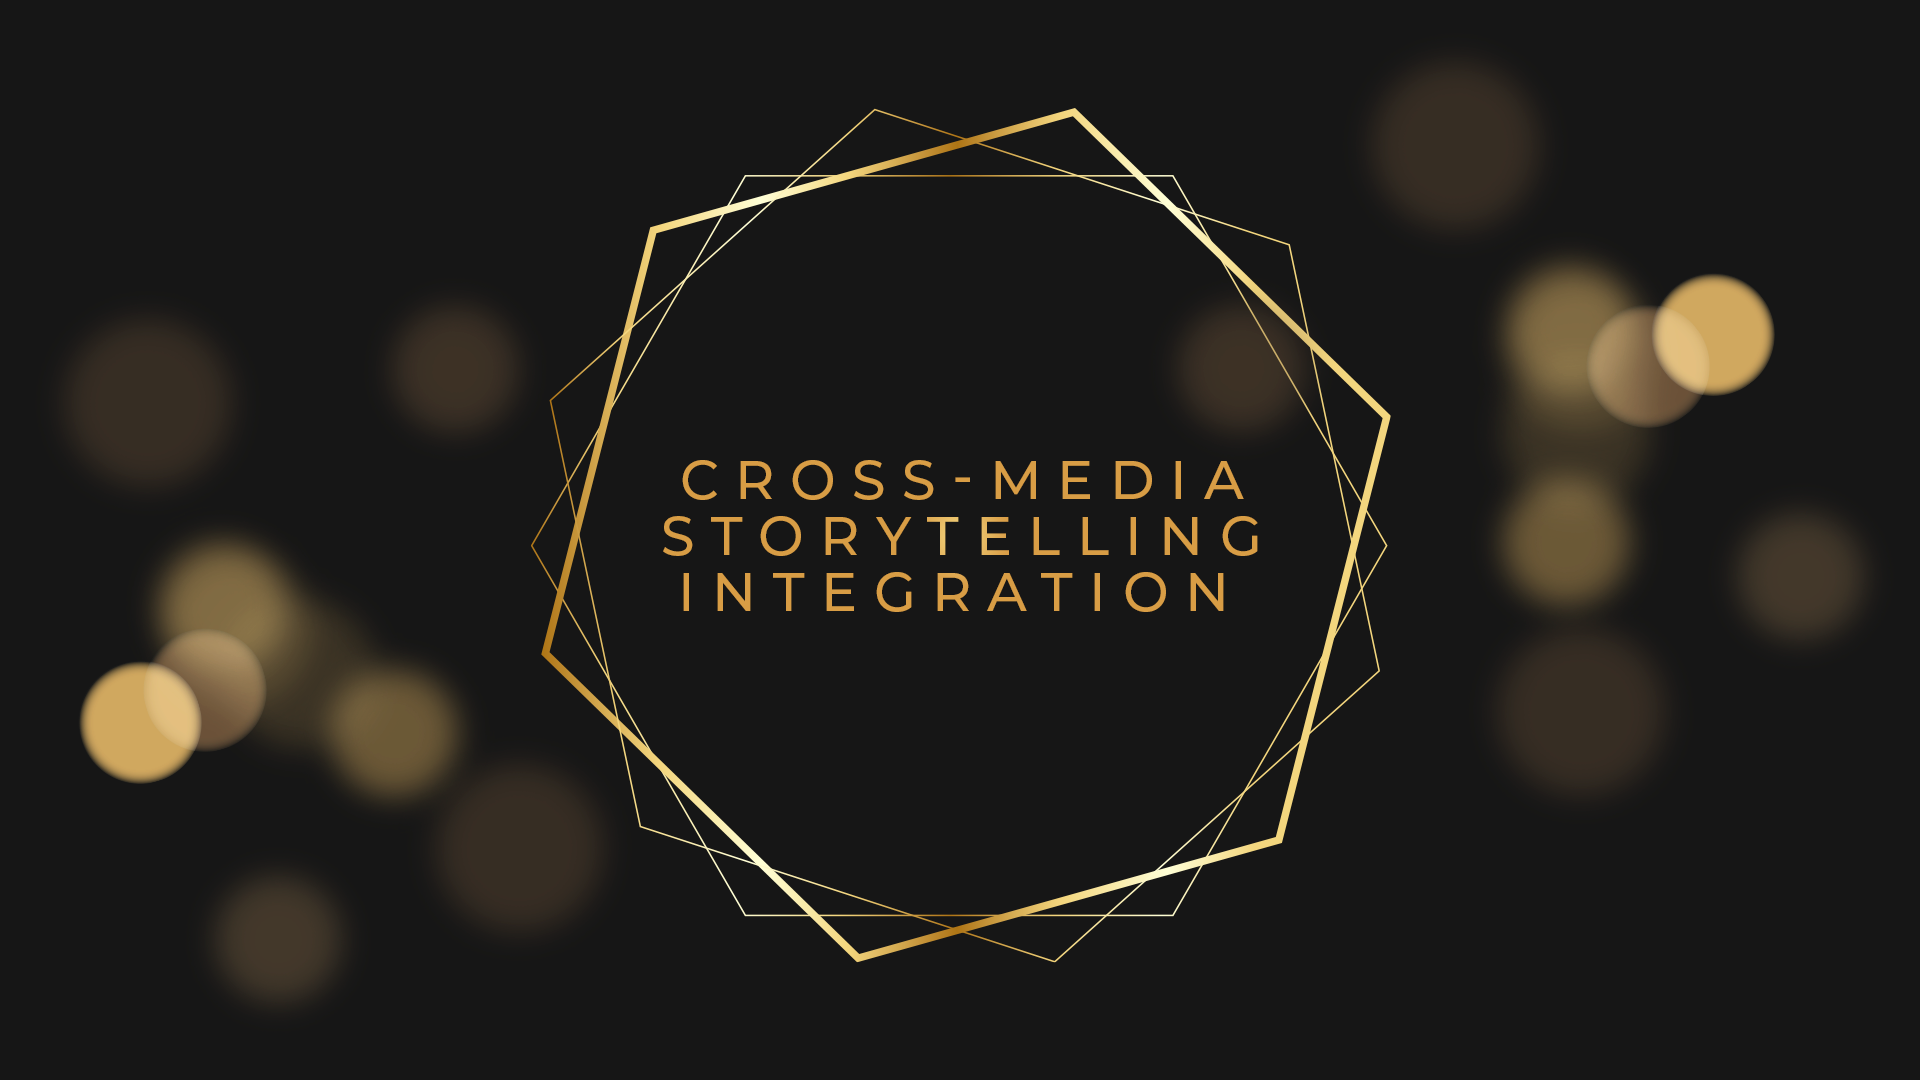 Cross-Media Storytelling Integration